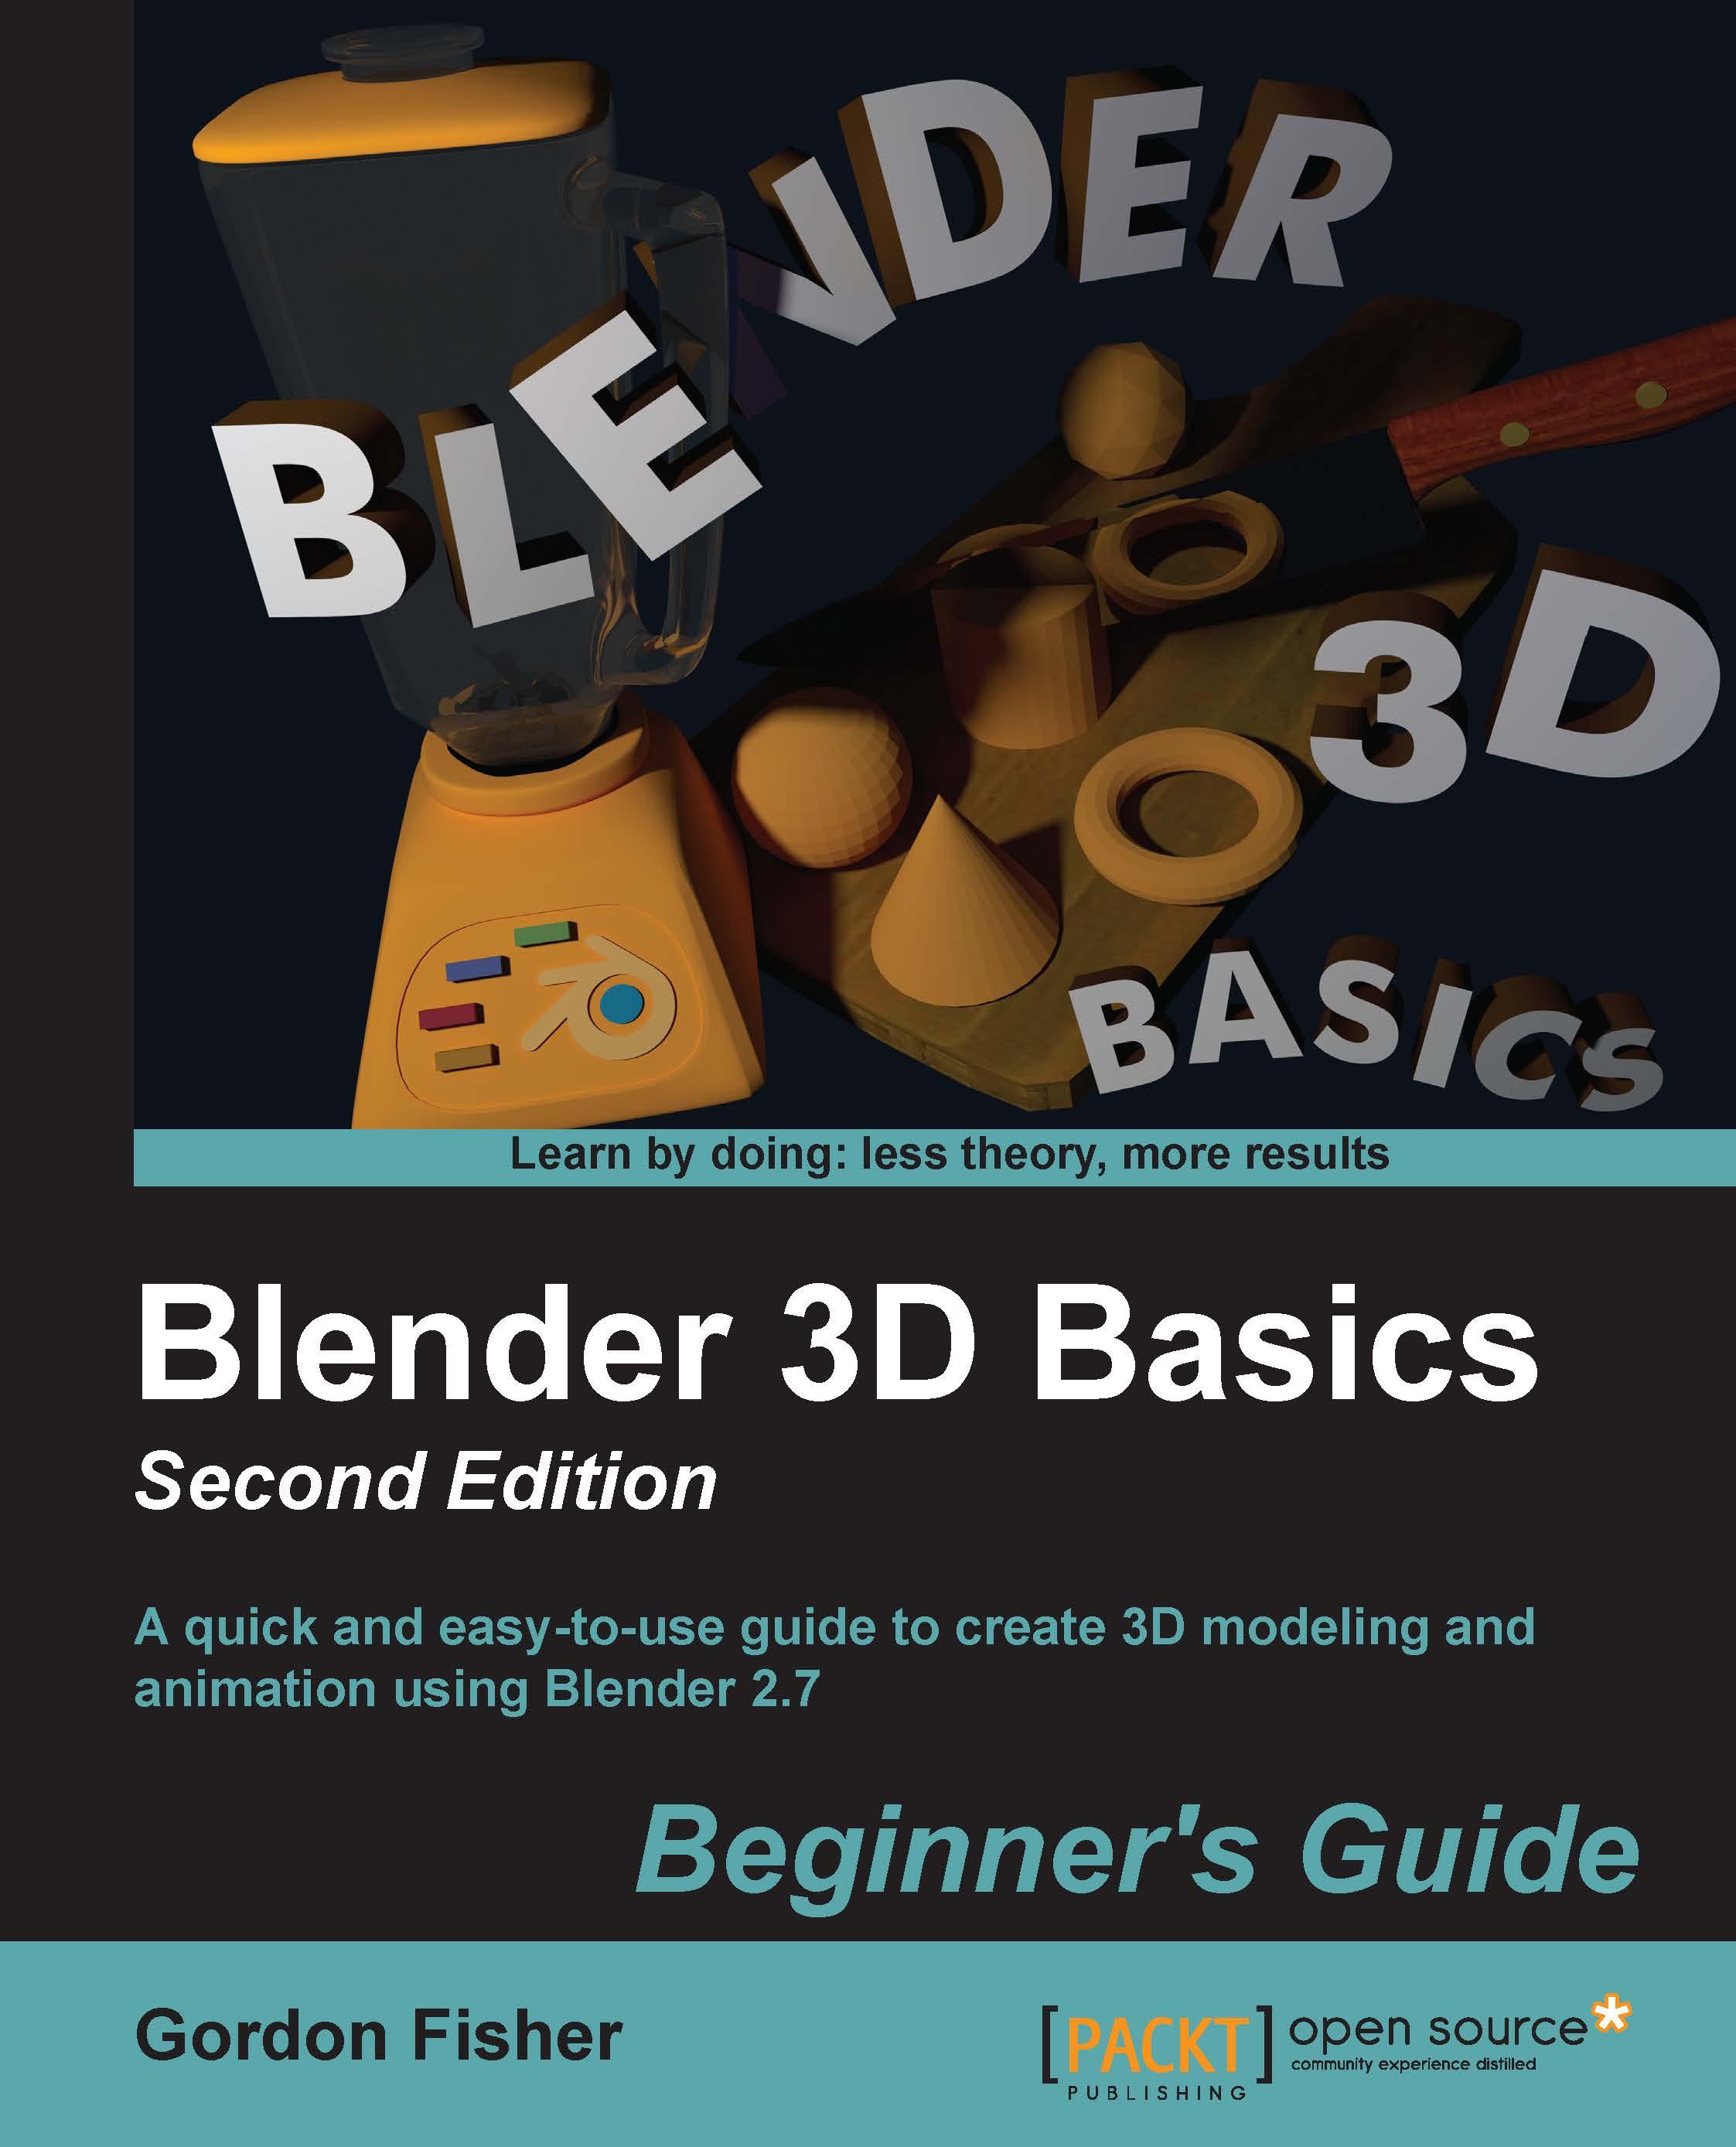 Blender 3D Basics Beginner's Guide Second Edition